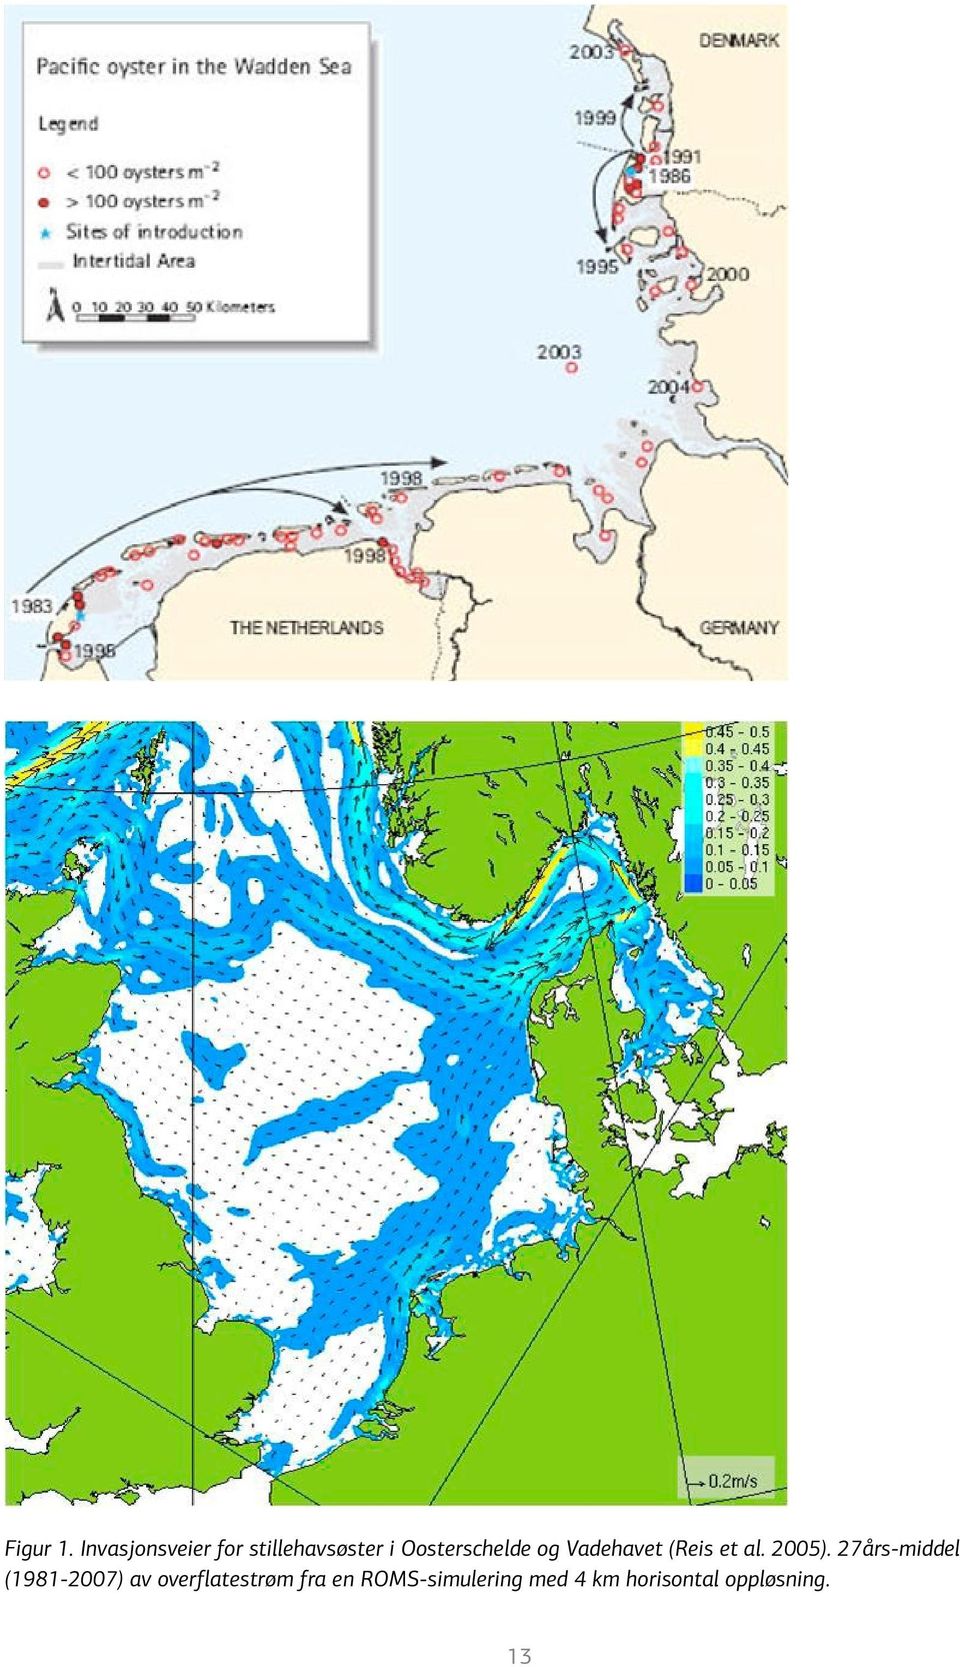 Oosterschelde og Vadehavet (Reis et al. 2005).